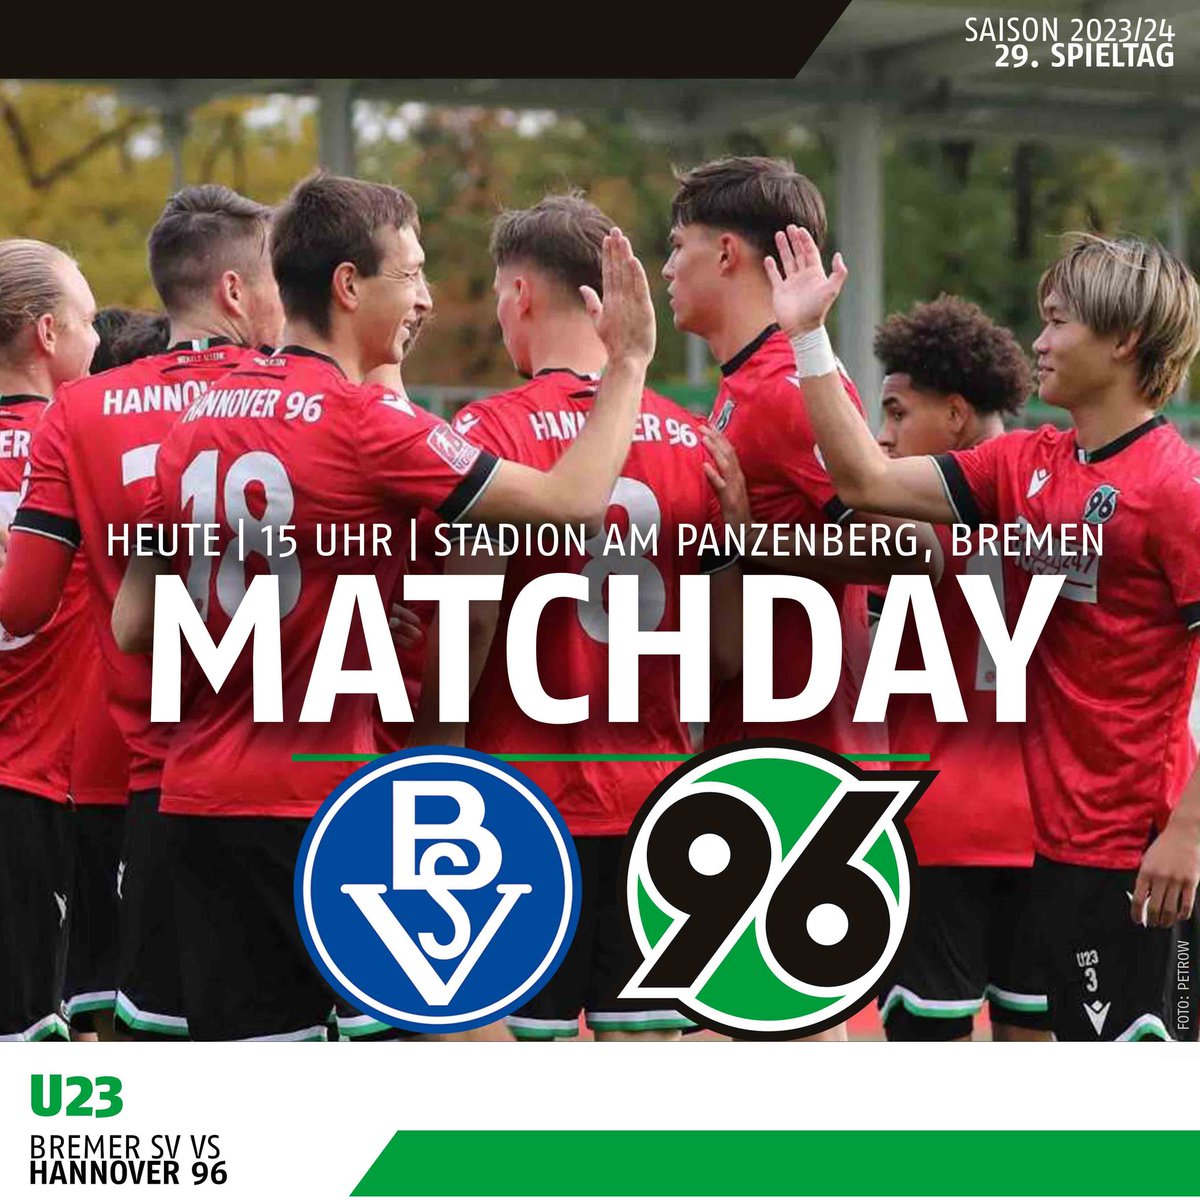 Heute geht's für unsere #96U23 nach #Bremen zum @BremerSV. Wir wünschen unseren Jungs viel Erfolg und ein gutes Spiel! #H96 #Hannover96 #96Akademie #NiemalsAllein ⚫️⚪️💚